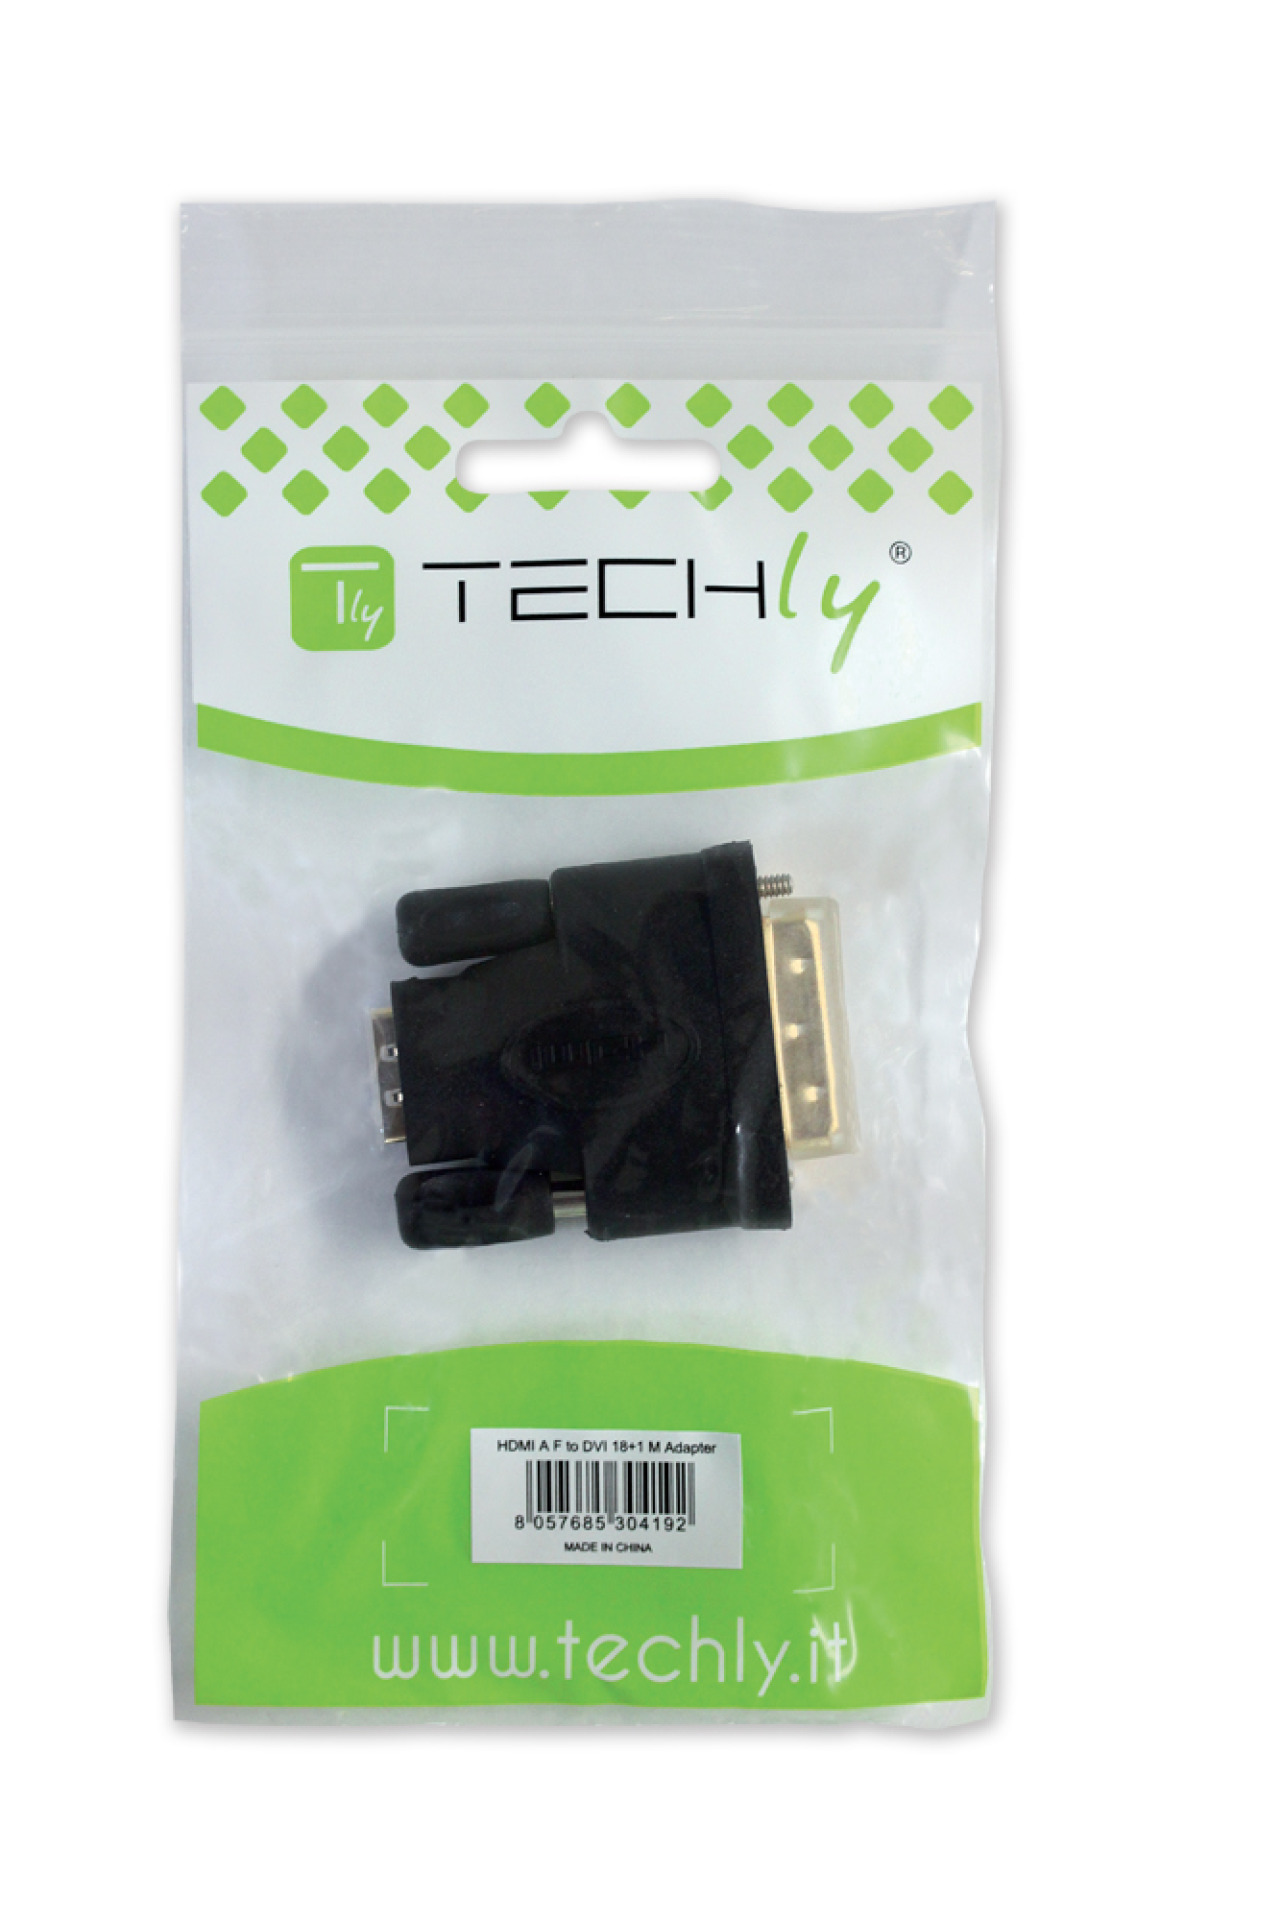 HDMI Buchse auf DVI-D 24+1 dual link Stecker